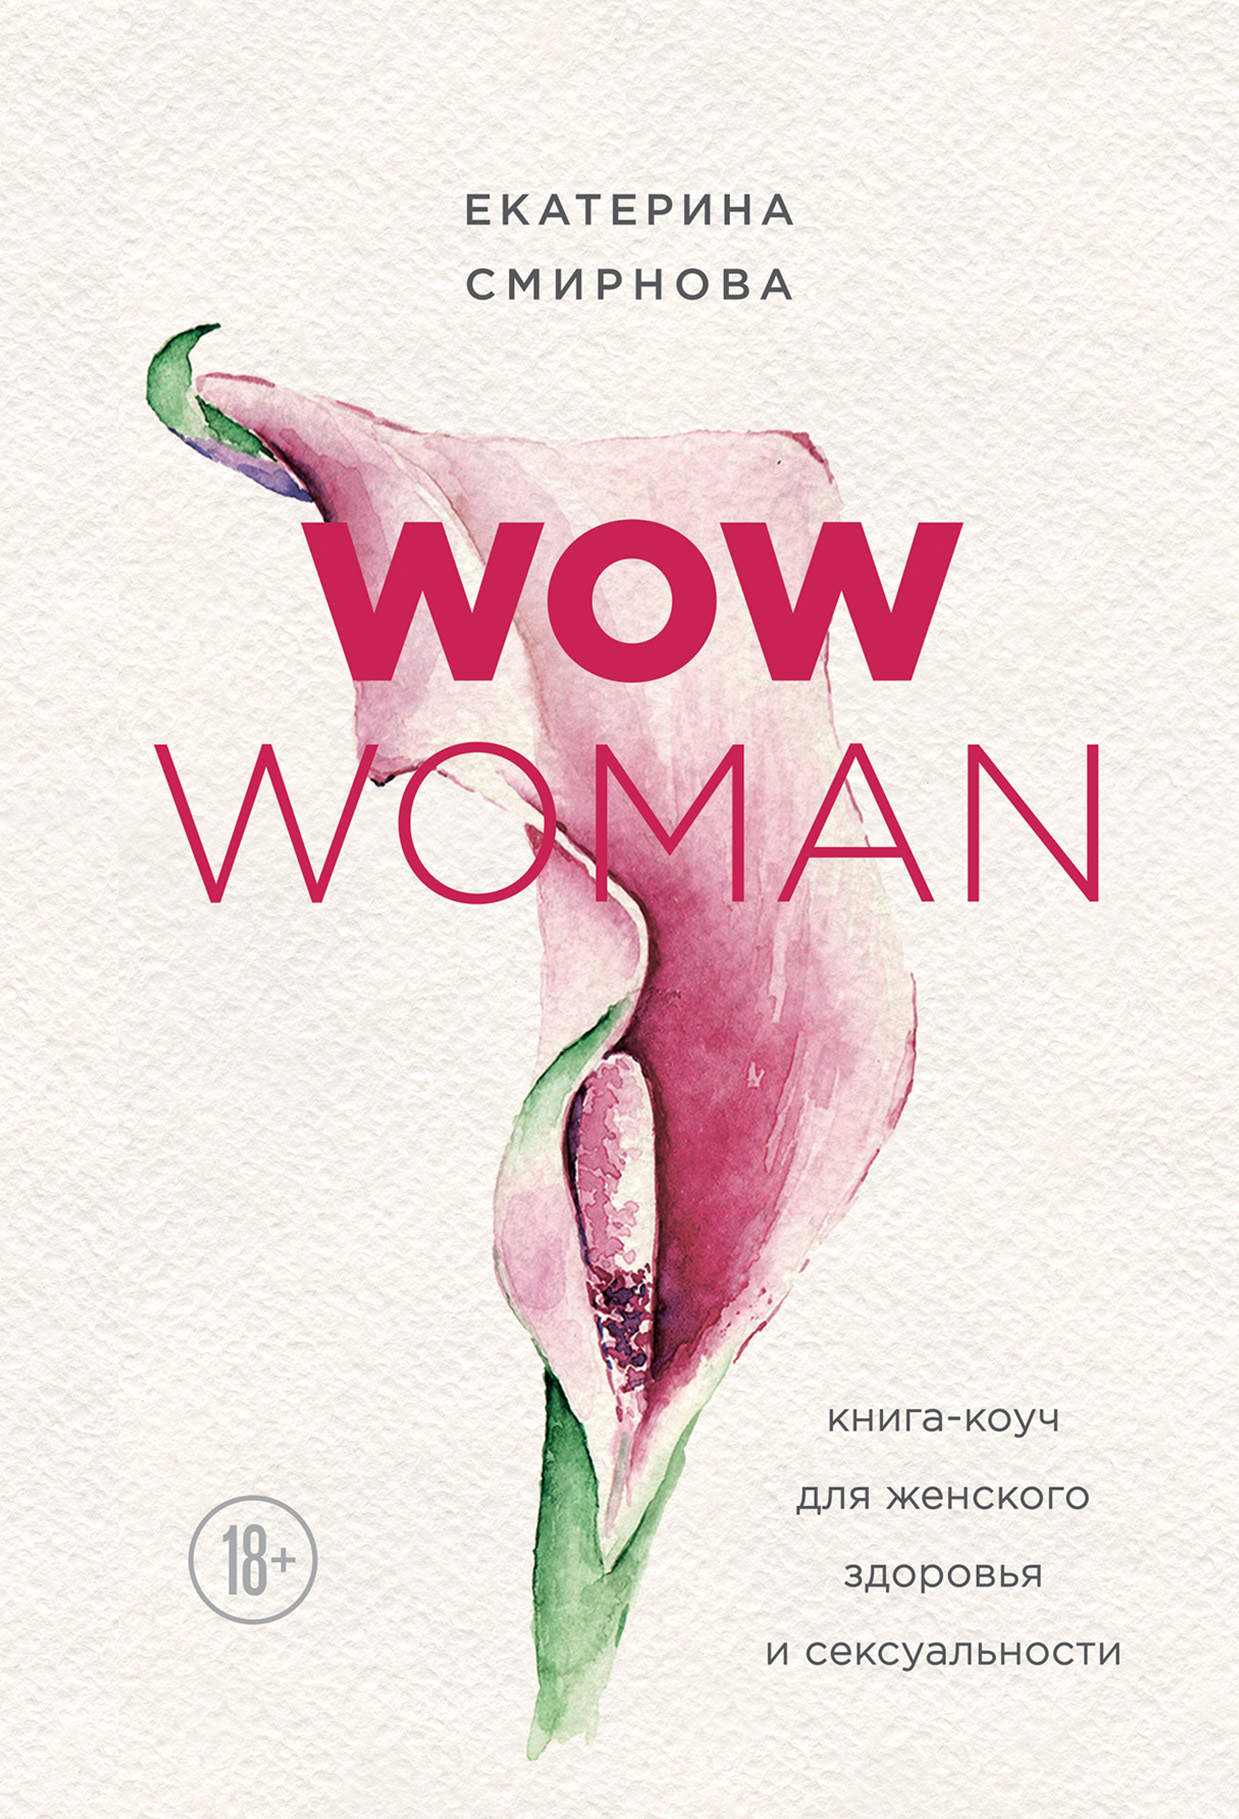 WOW Woman. Книга-коуч для женского здоровья и сексуальности – Екатерина Смирнова